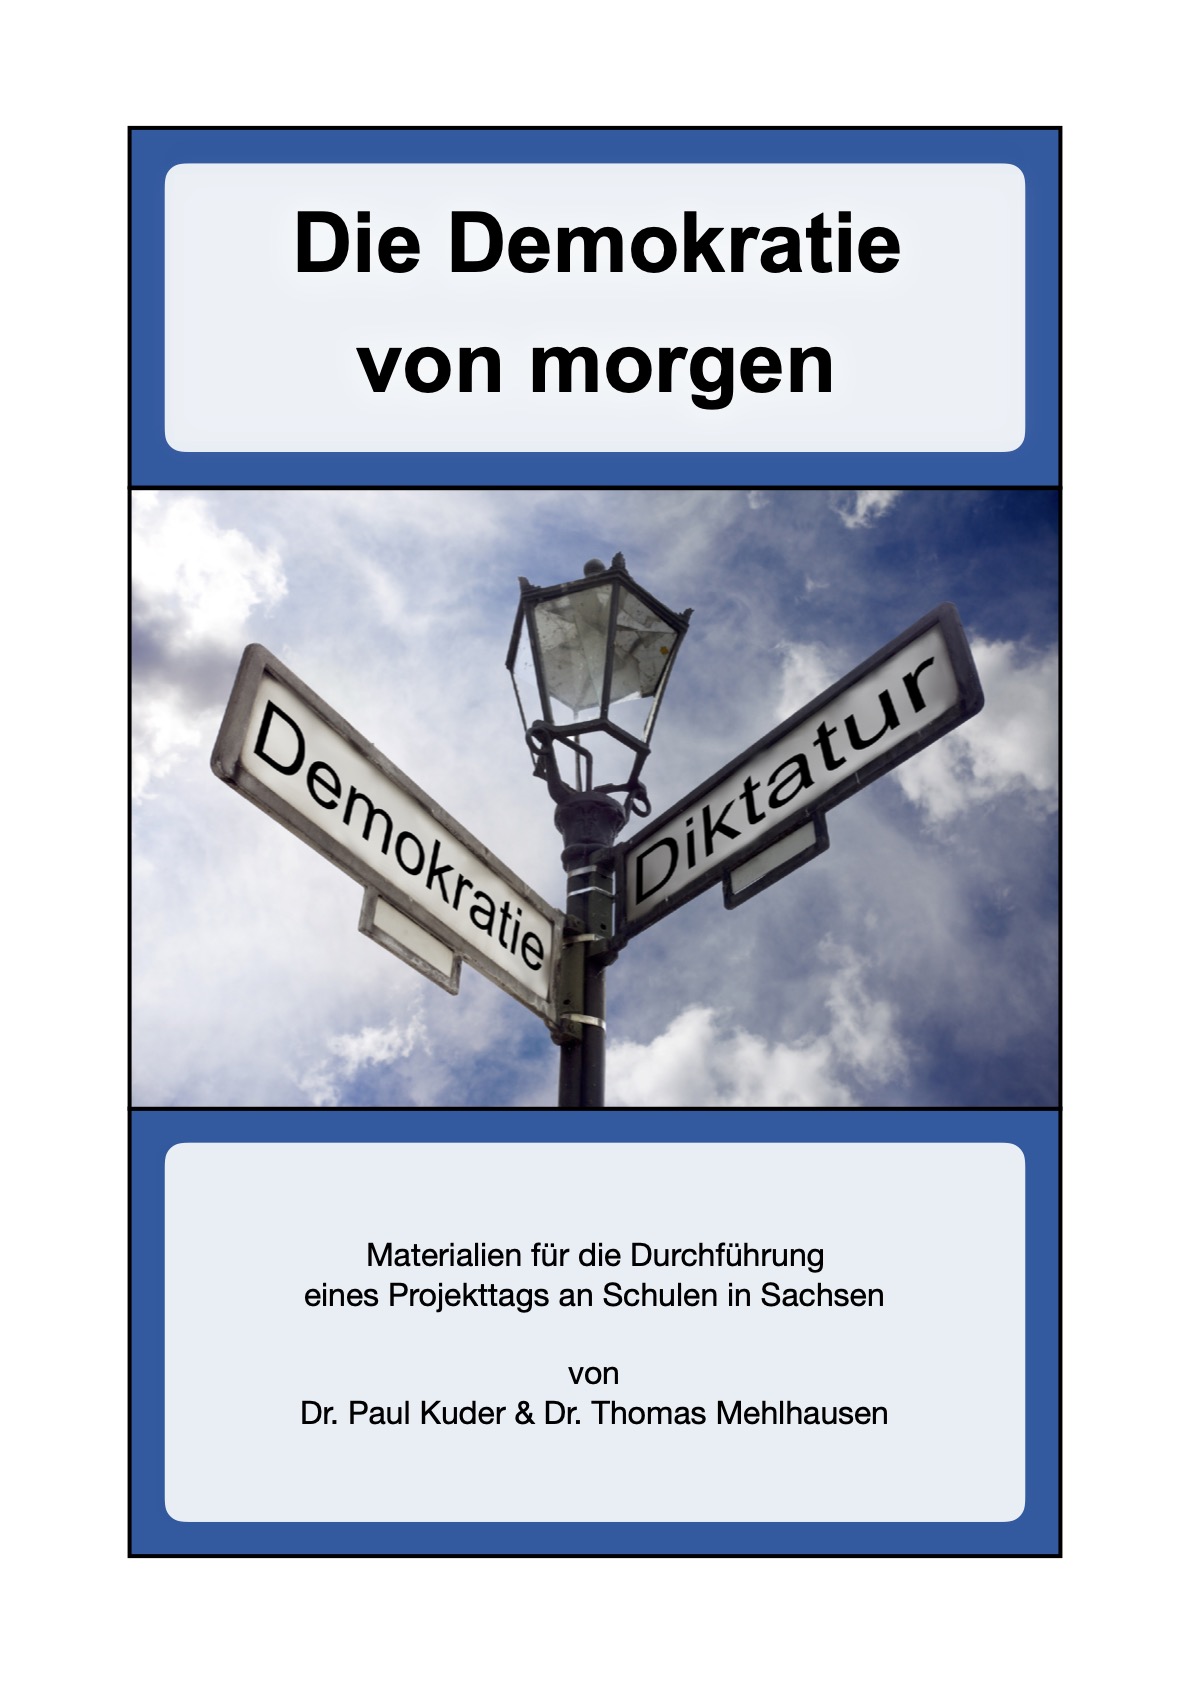 Buchcover mit der Aufschrift "Die Demokratie von morgen. Materialien für die Durchführung eines Projekttags an Schulen in Sachsen von Dr. Paul Kuder und Dr. Thomas Mehlhausen. Bei Klick öffnet sich die PDF.